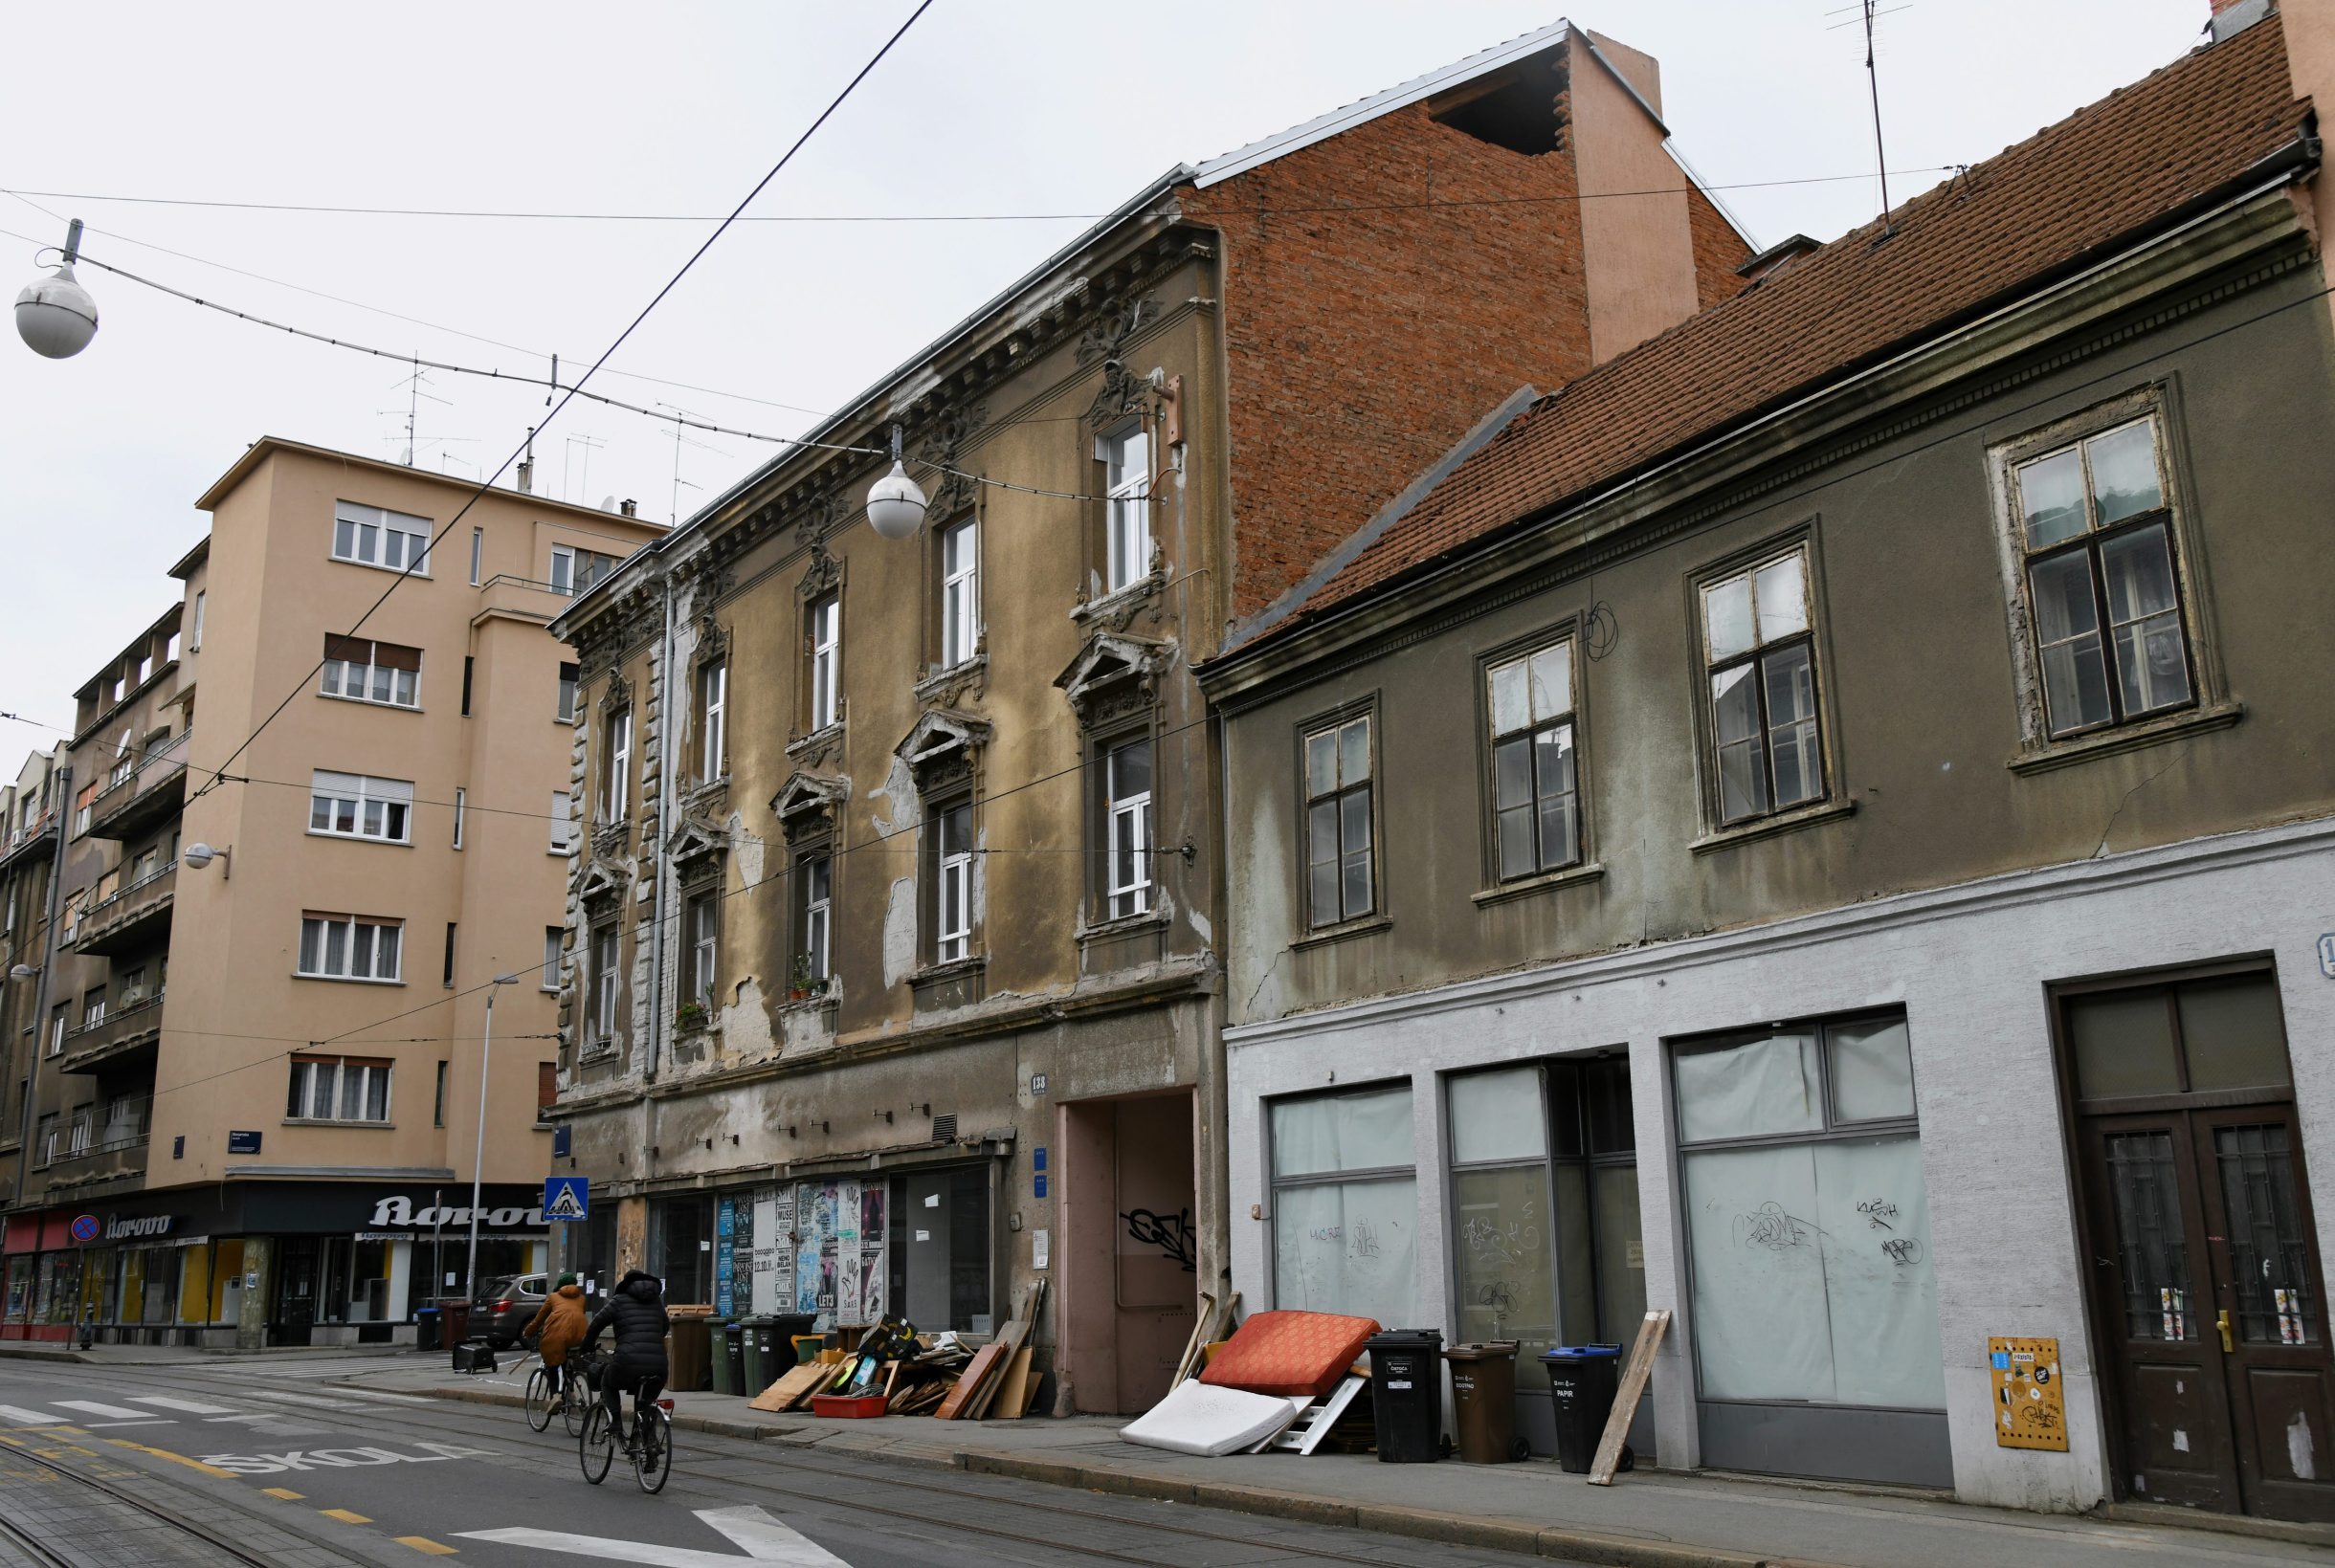 Zagreb, 140420
Ilica 138.
Posljedice potresa na zgradi koja se nalazi na krizanju ilice i Bosanske.
Foto: Srdjan Vrancic / CROPIX

